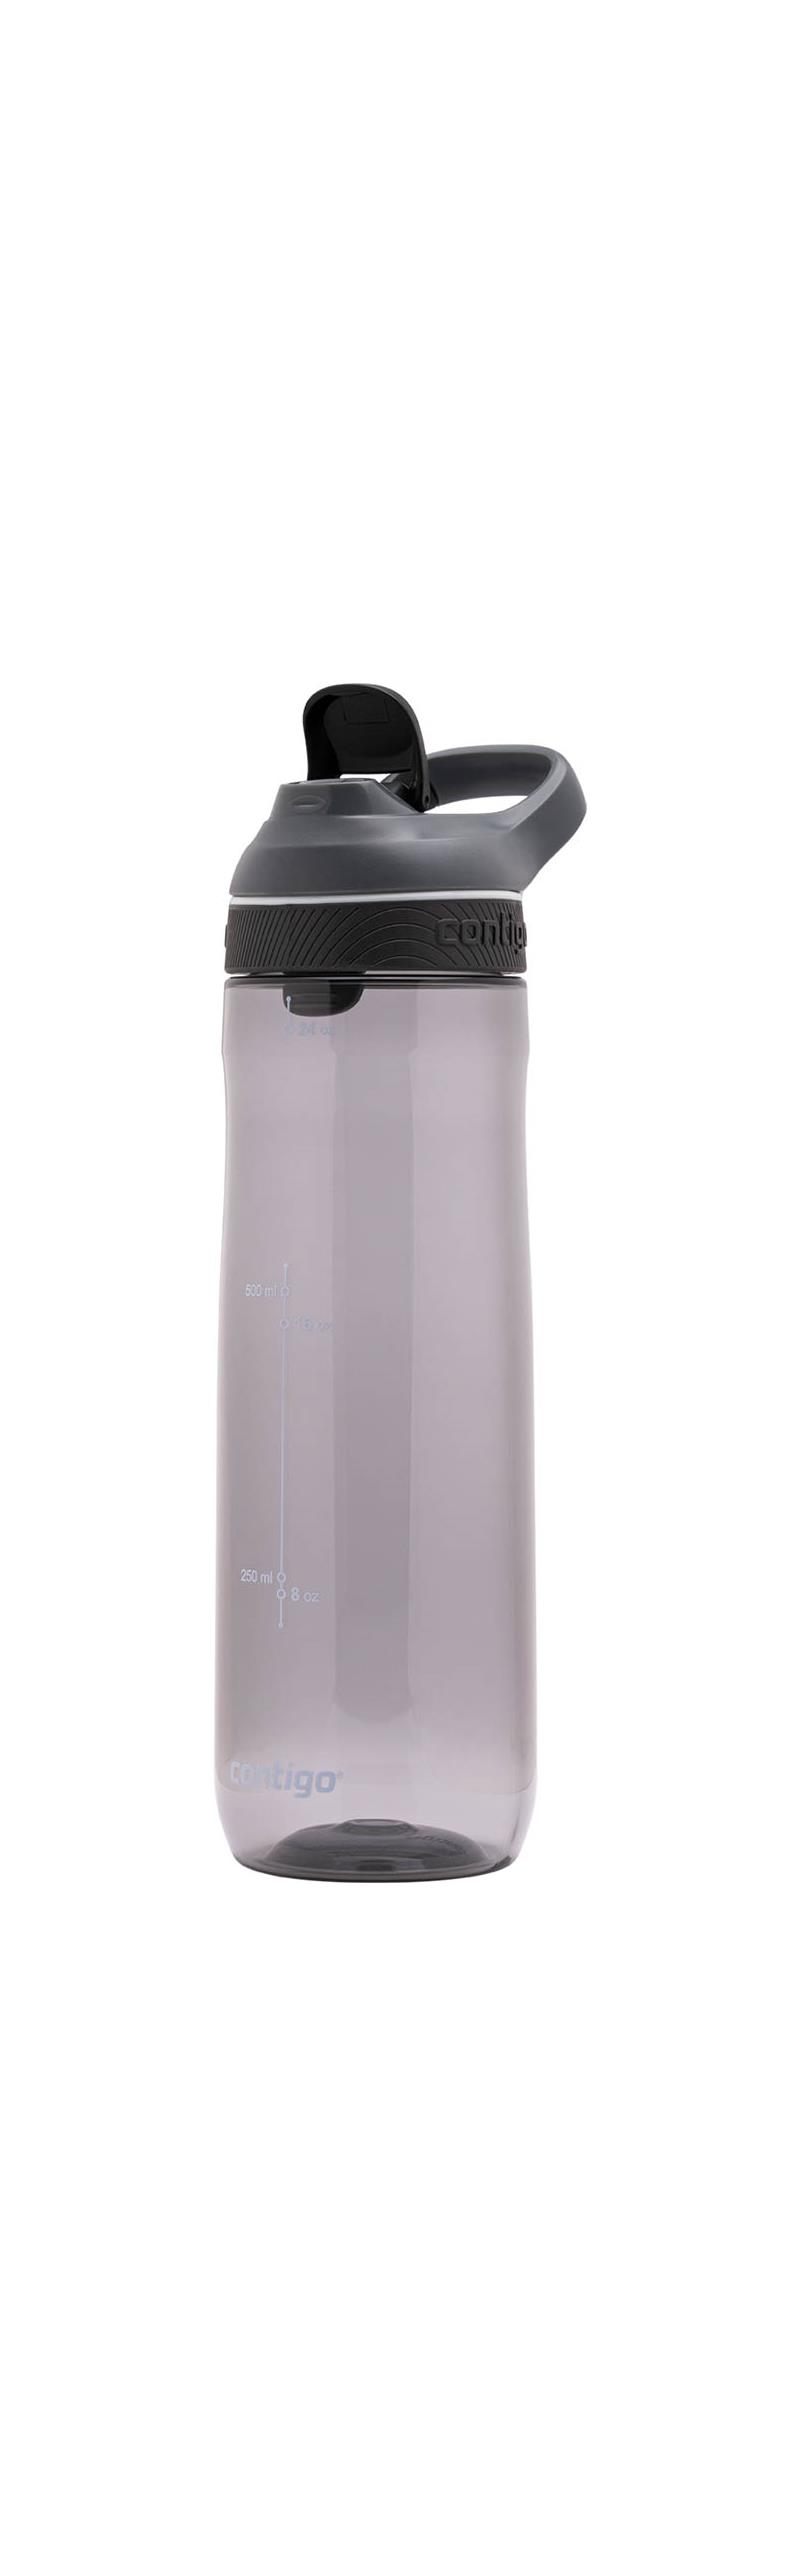 Contigo Autoseal Cortland Water Bottle-4